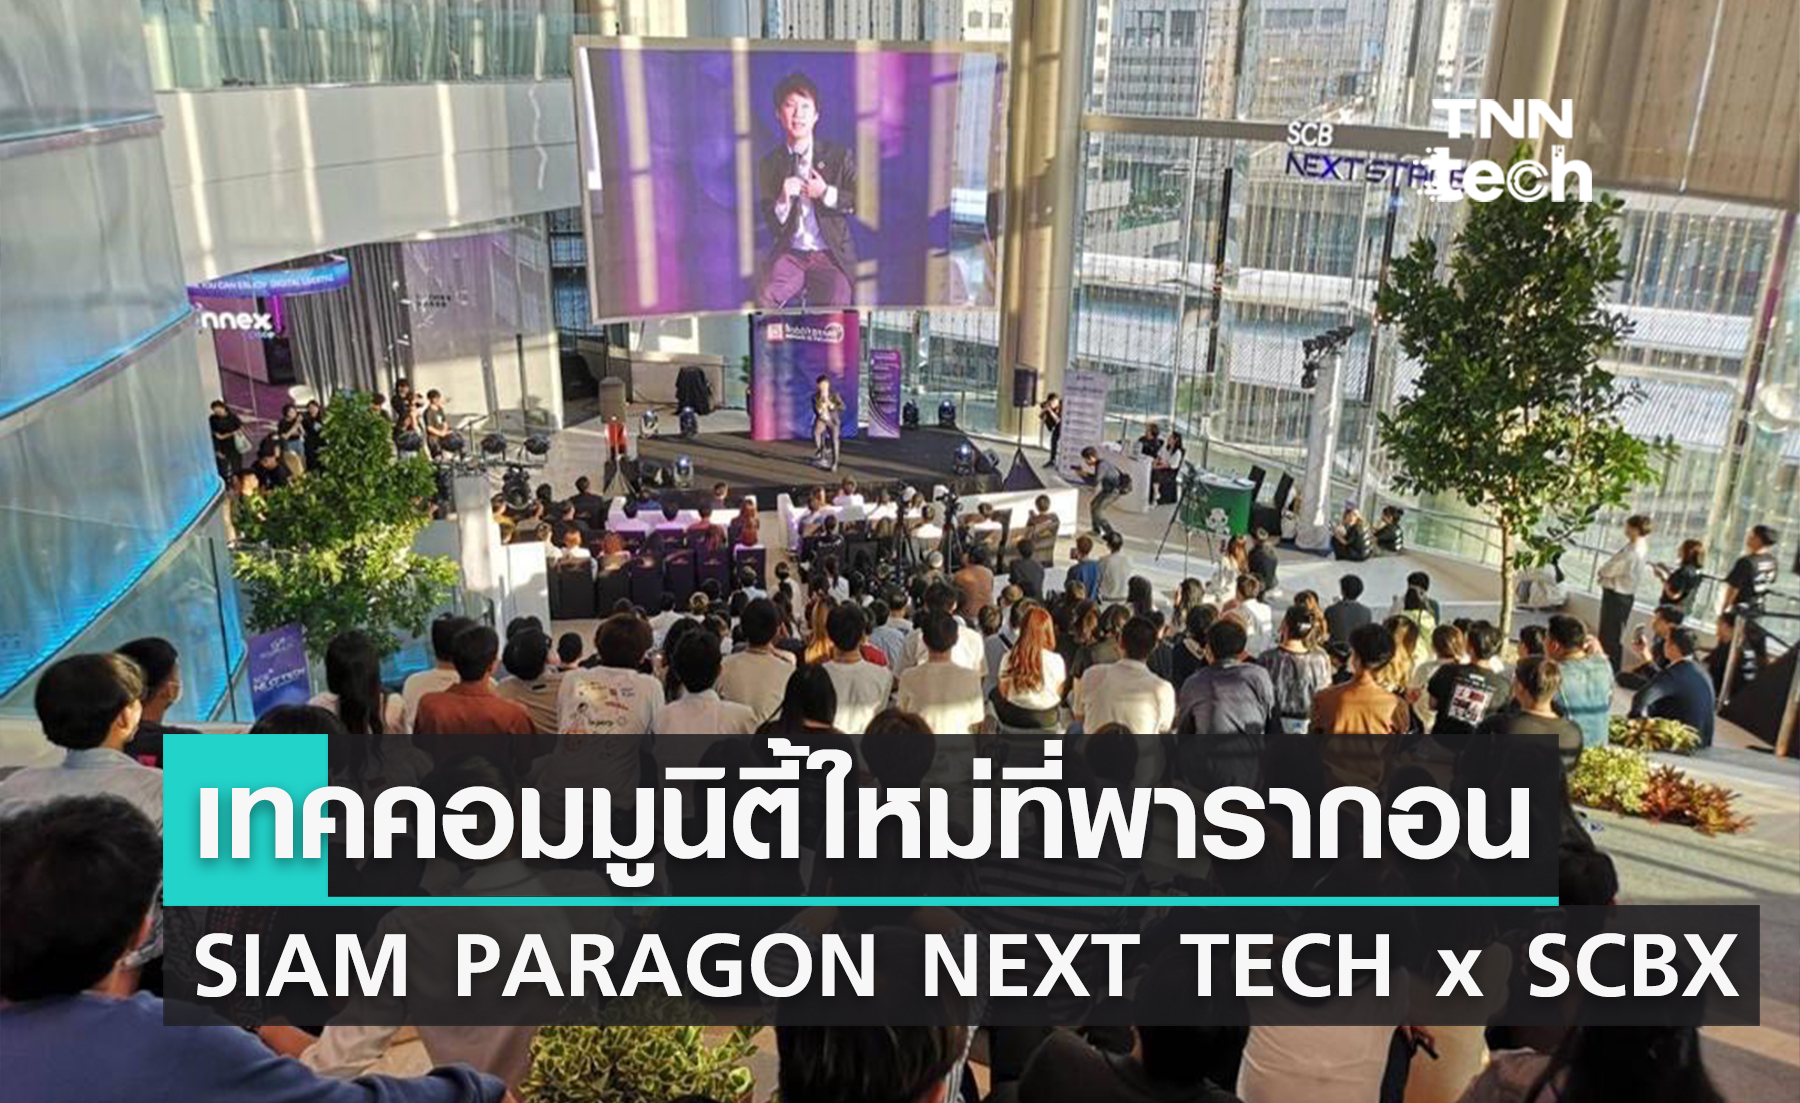 "พารากอน" เปิดตัวเทคคอมมูนิตี้แห่งใหม่ ‘SIAM PARAGON NEXT TECH x SCBX’